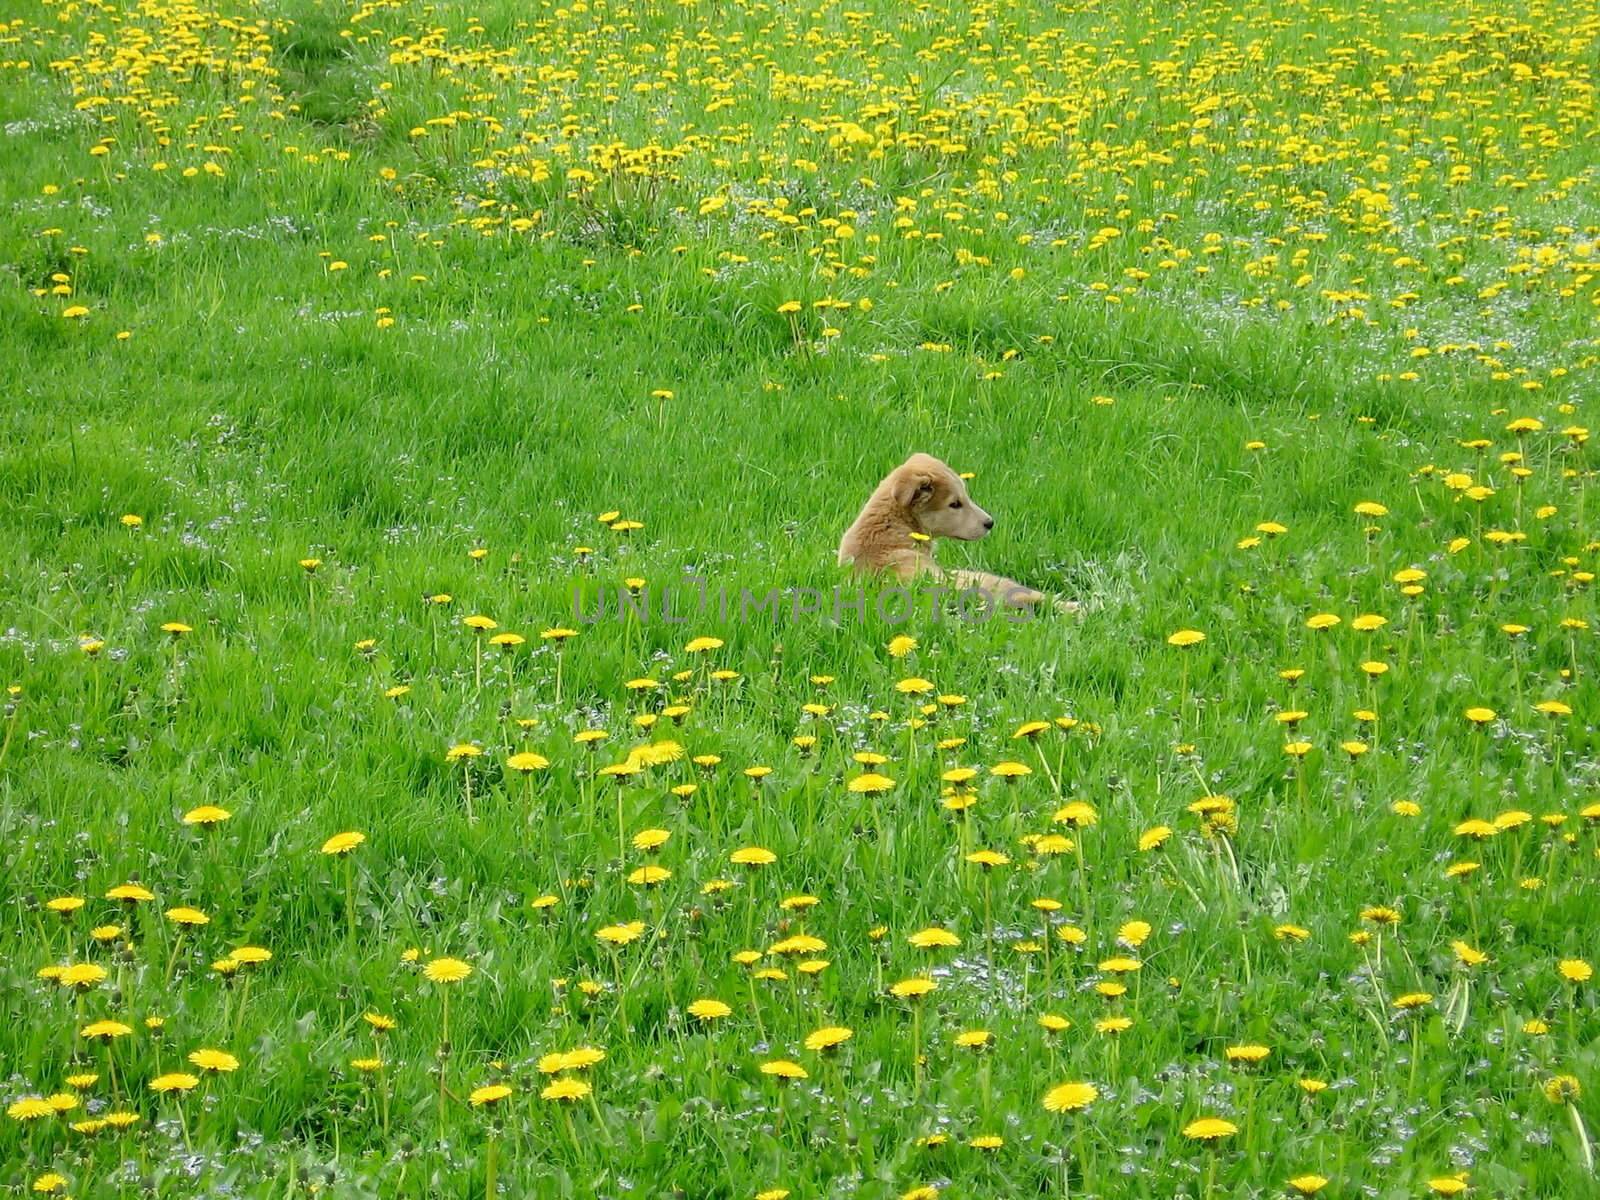 Cute puppy sit in the yellow dandelion field